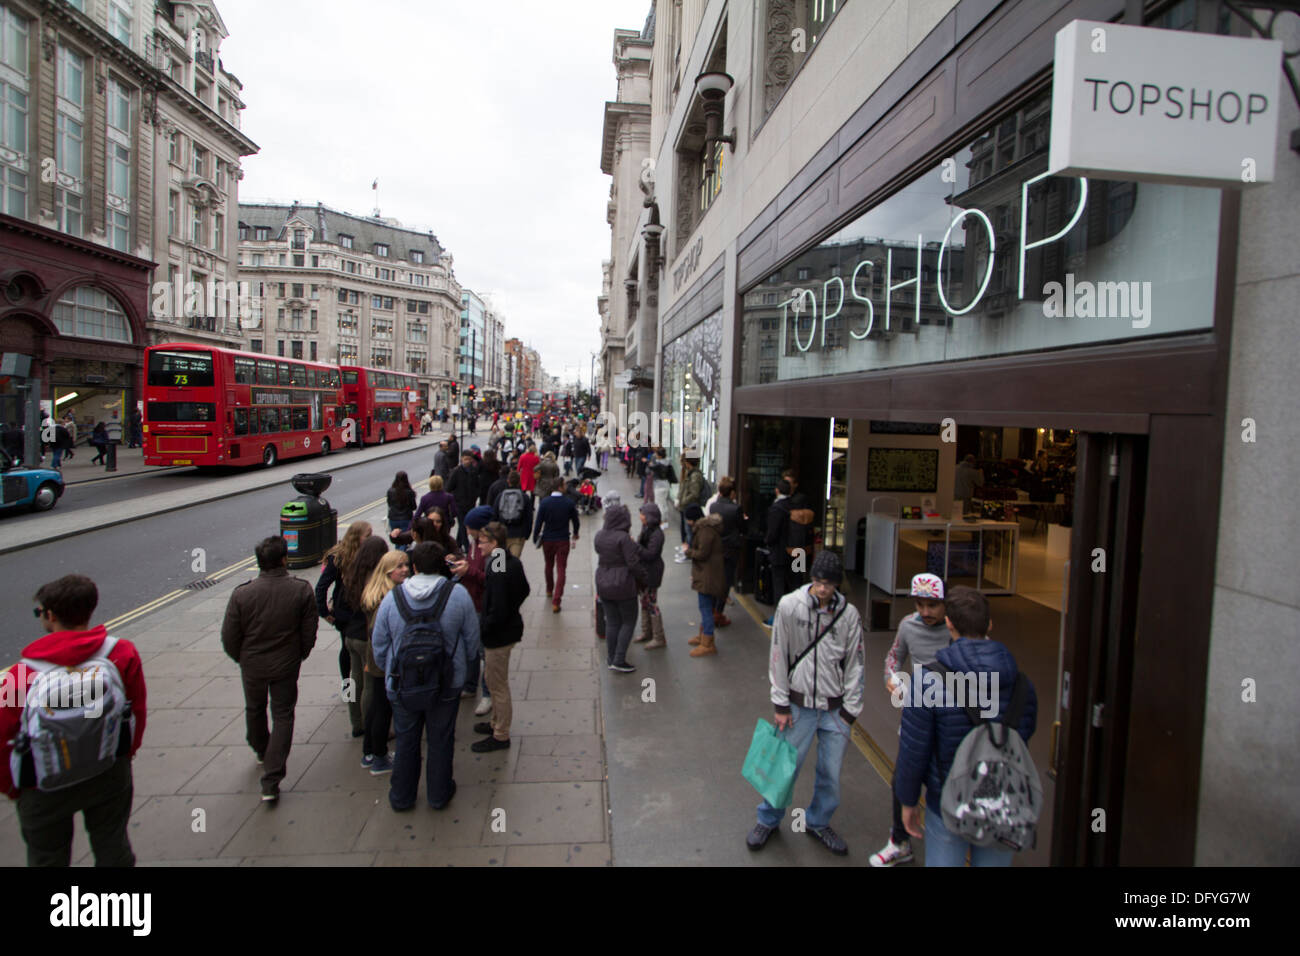 Topshop fashion retailer Oxford Street London Stock Photo